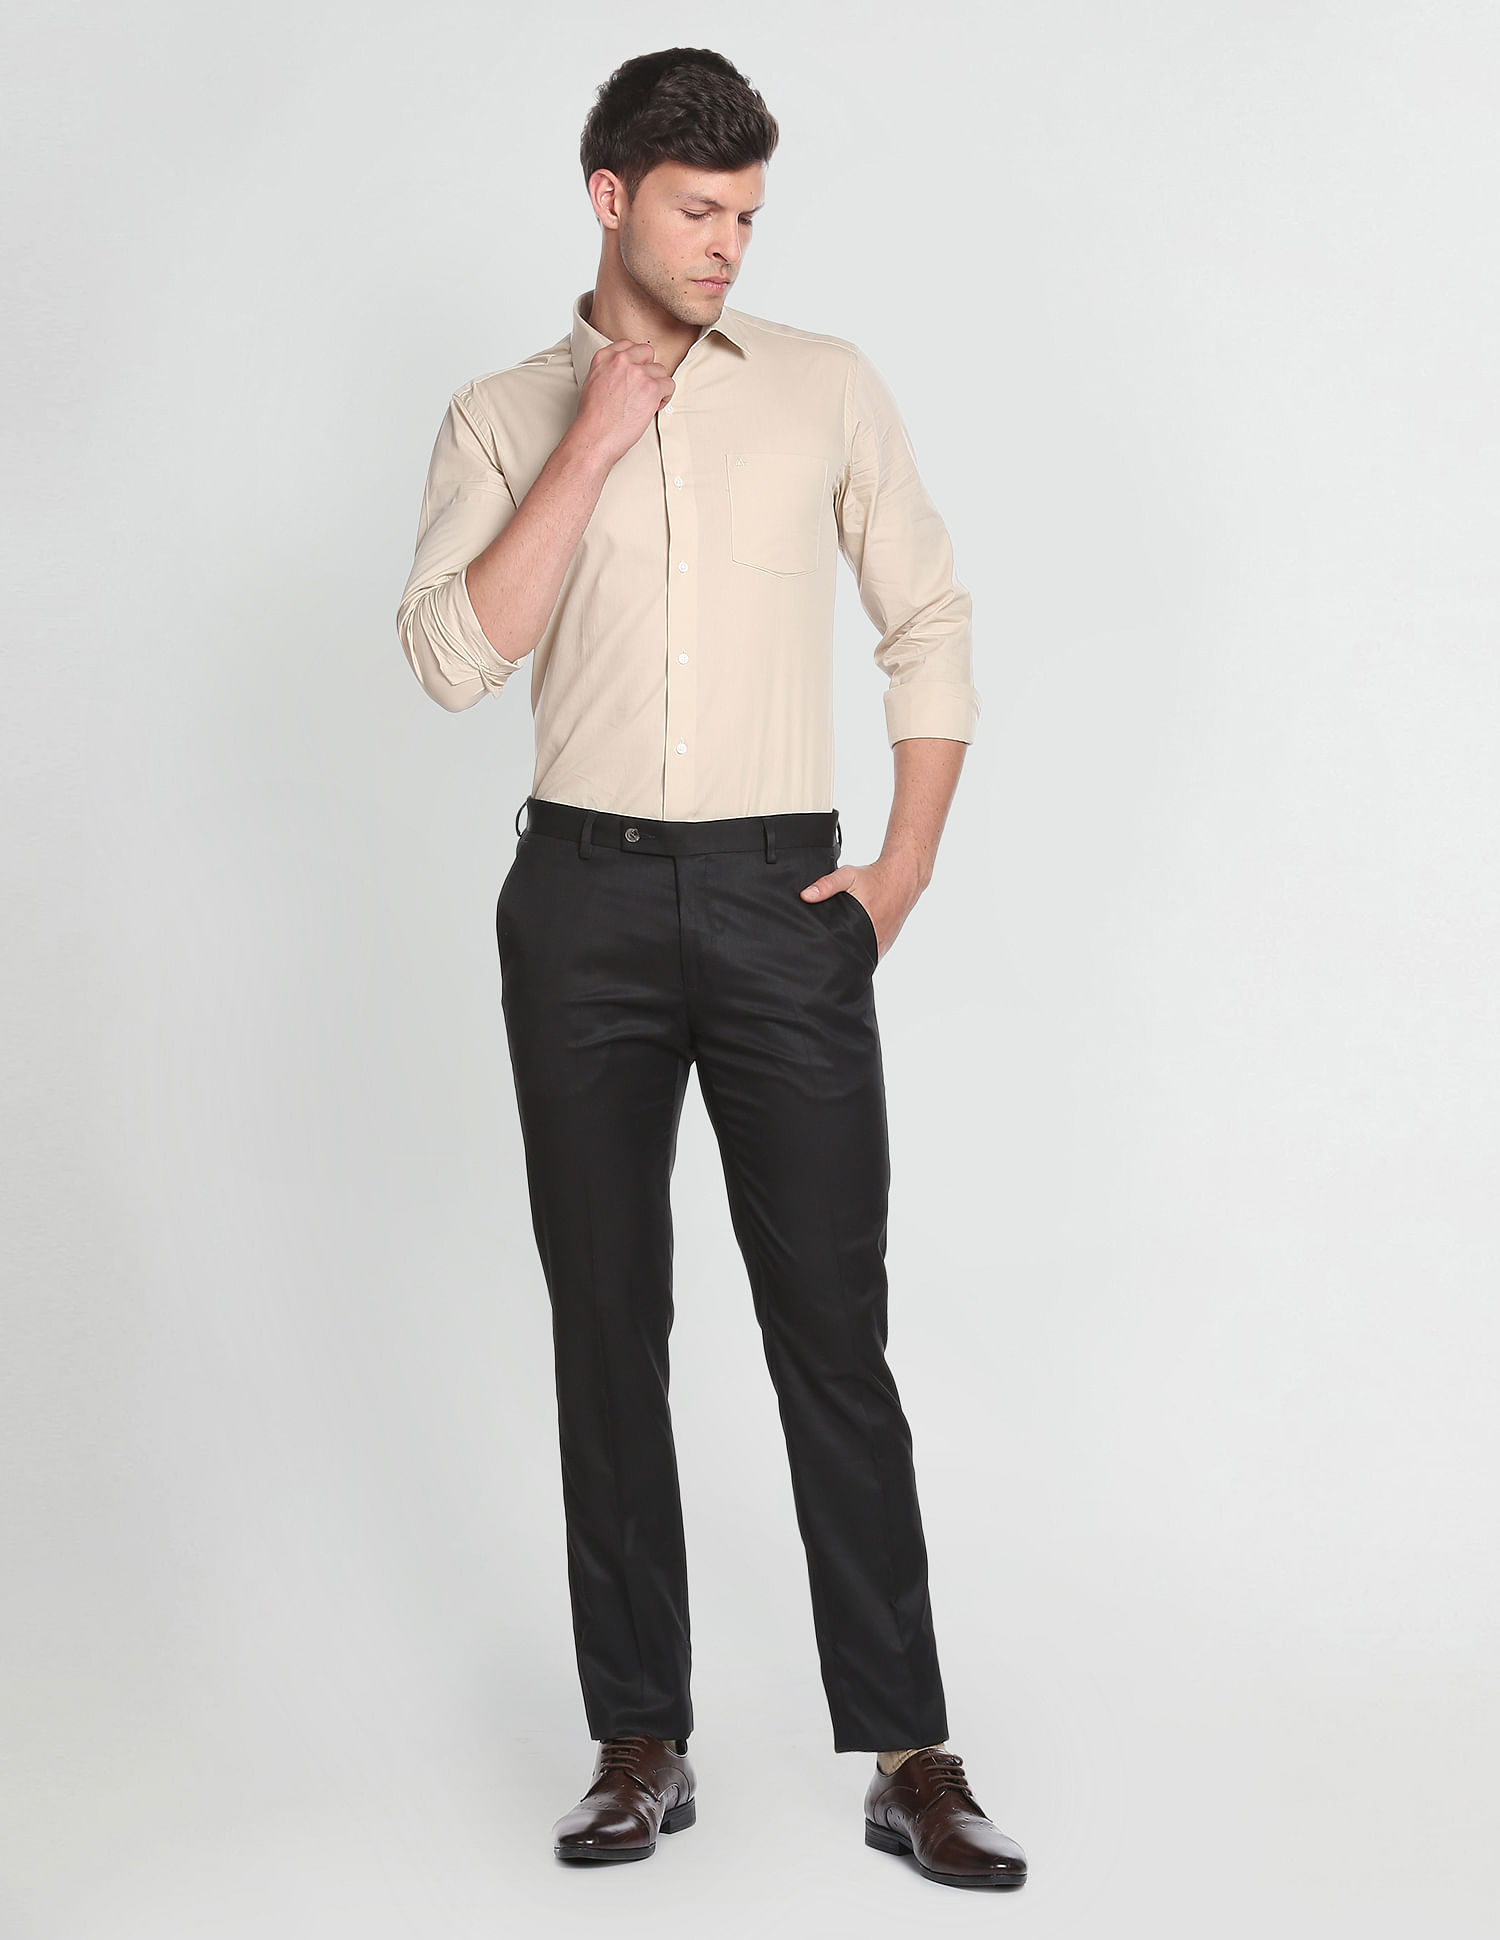 Arrow Formal Trousers - Men - 1765753135